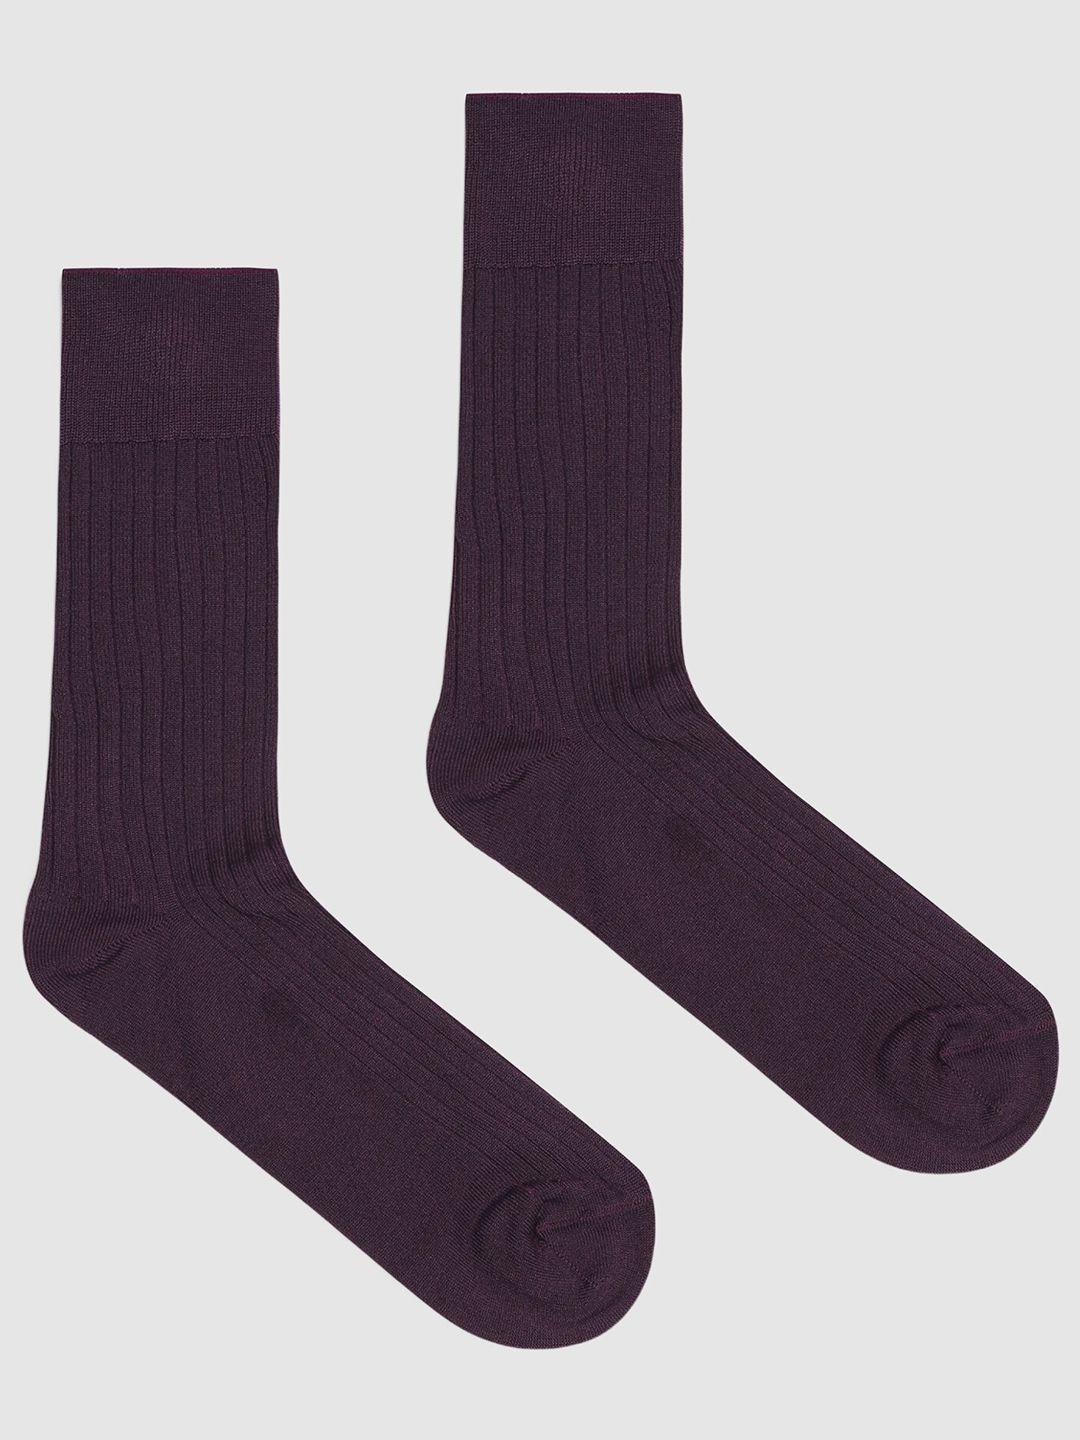 blackberrys men patterned cotton calf length socks